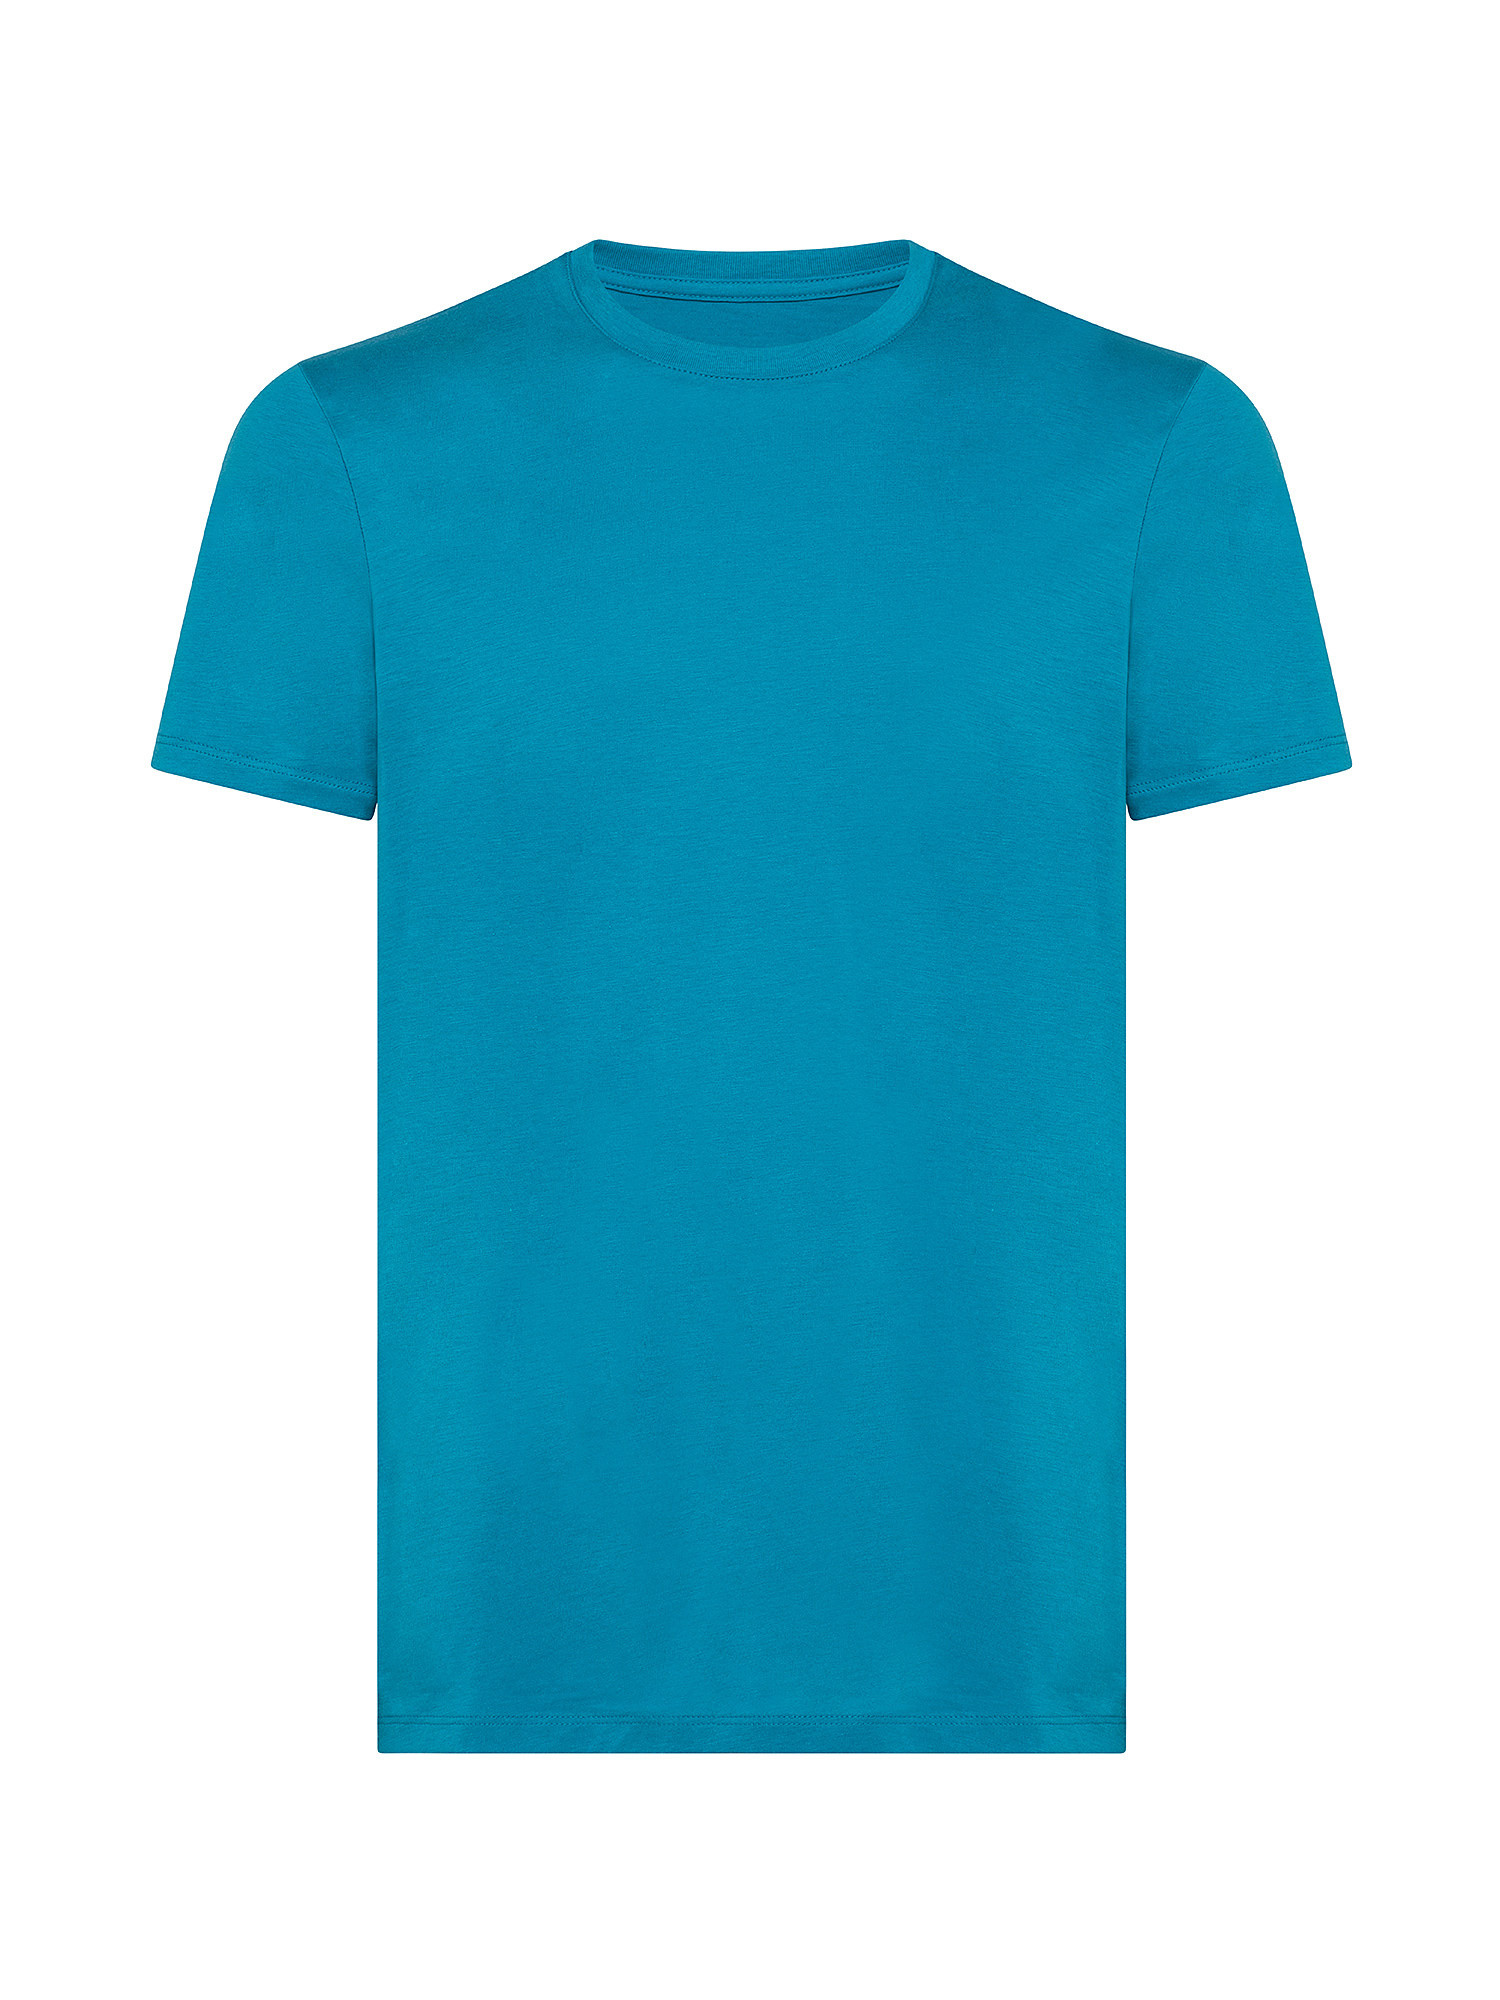 T-shirt, Azzurro turchese, large image number 0